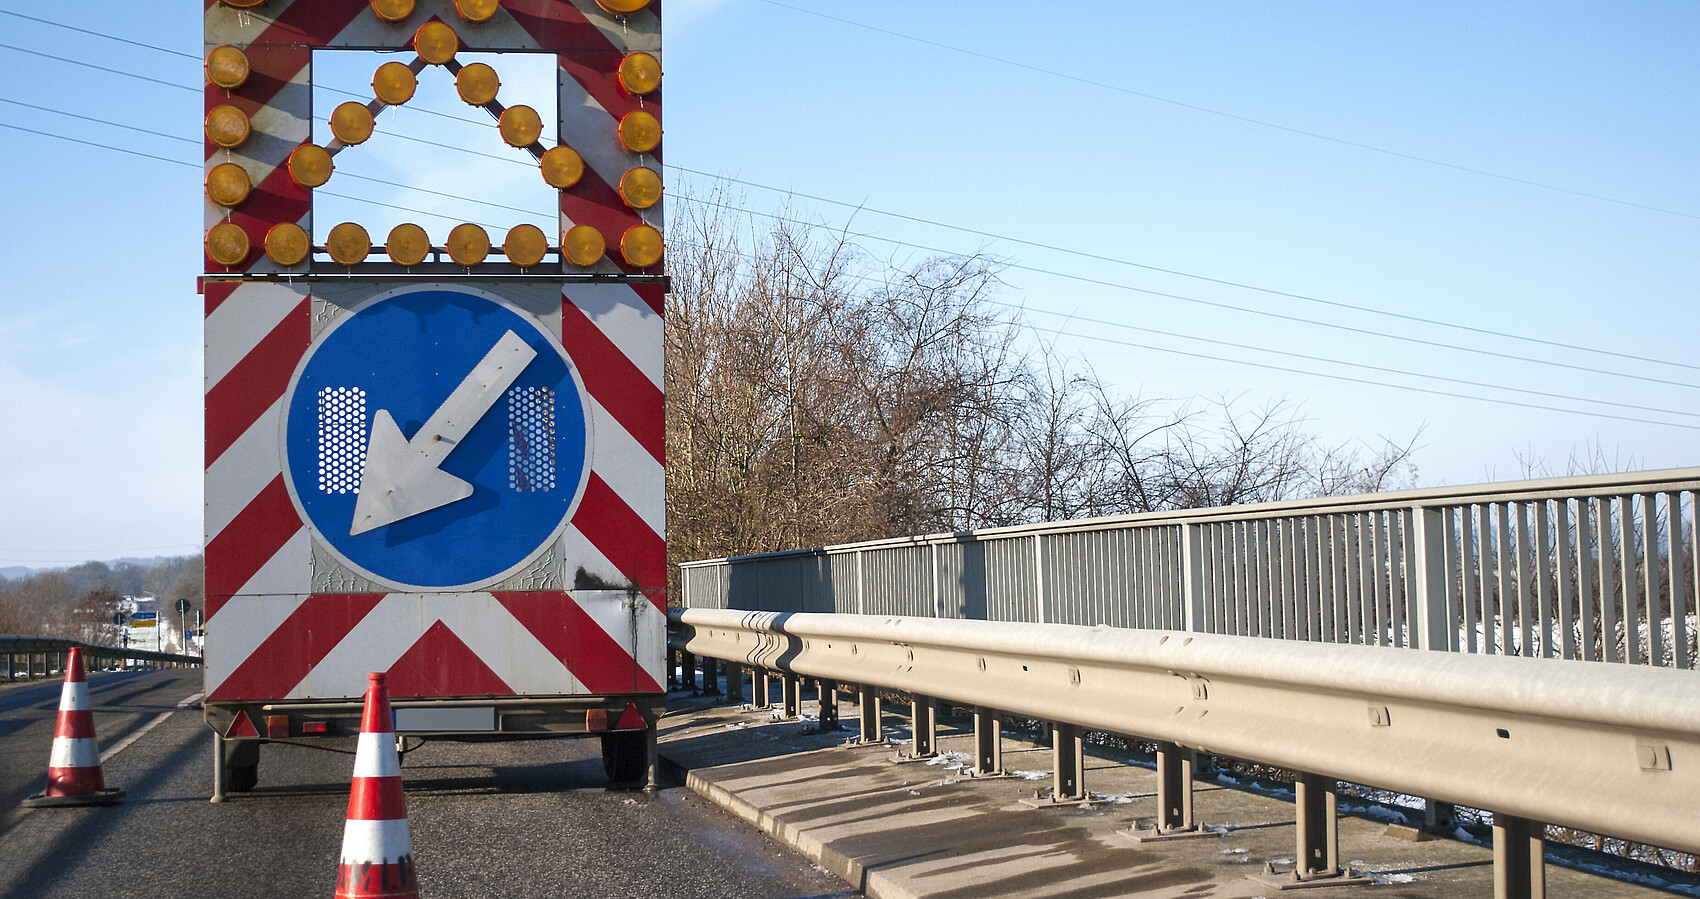 Baustelle auf einer Brücke mit Baustellenfahrzeug und Warnschild, Fahrbahnverengung